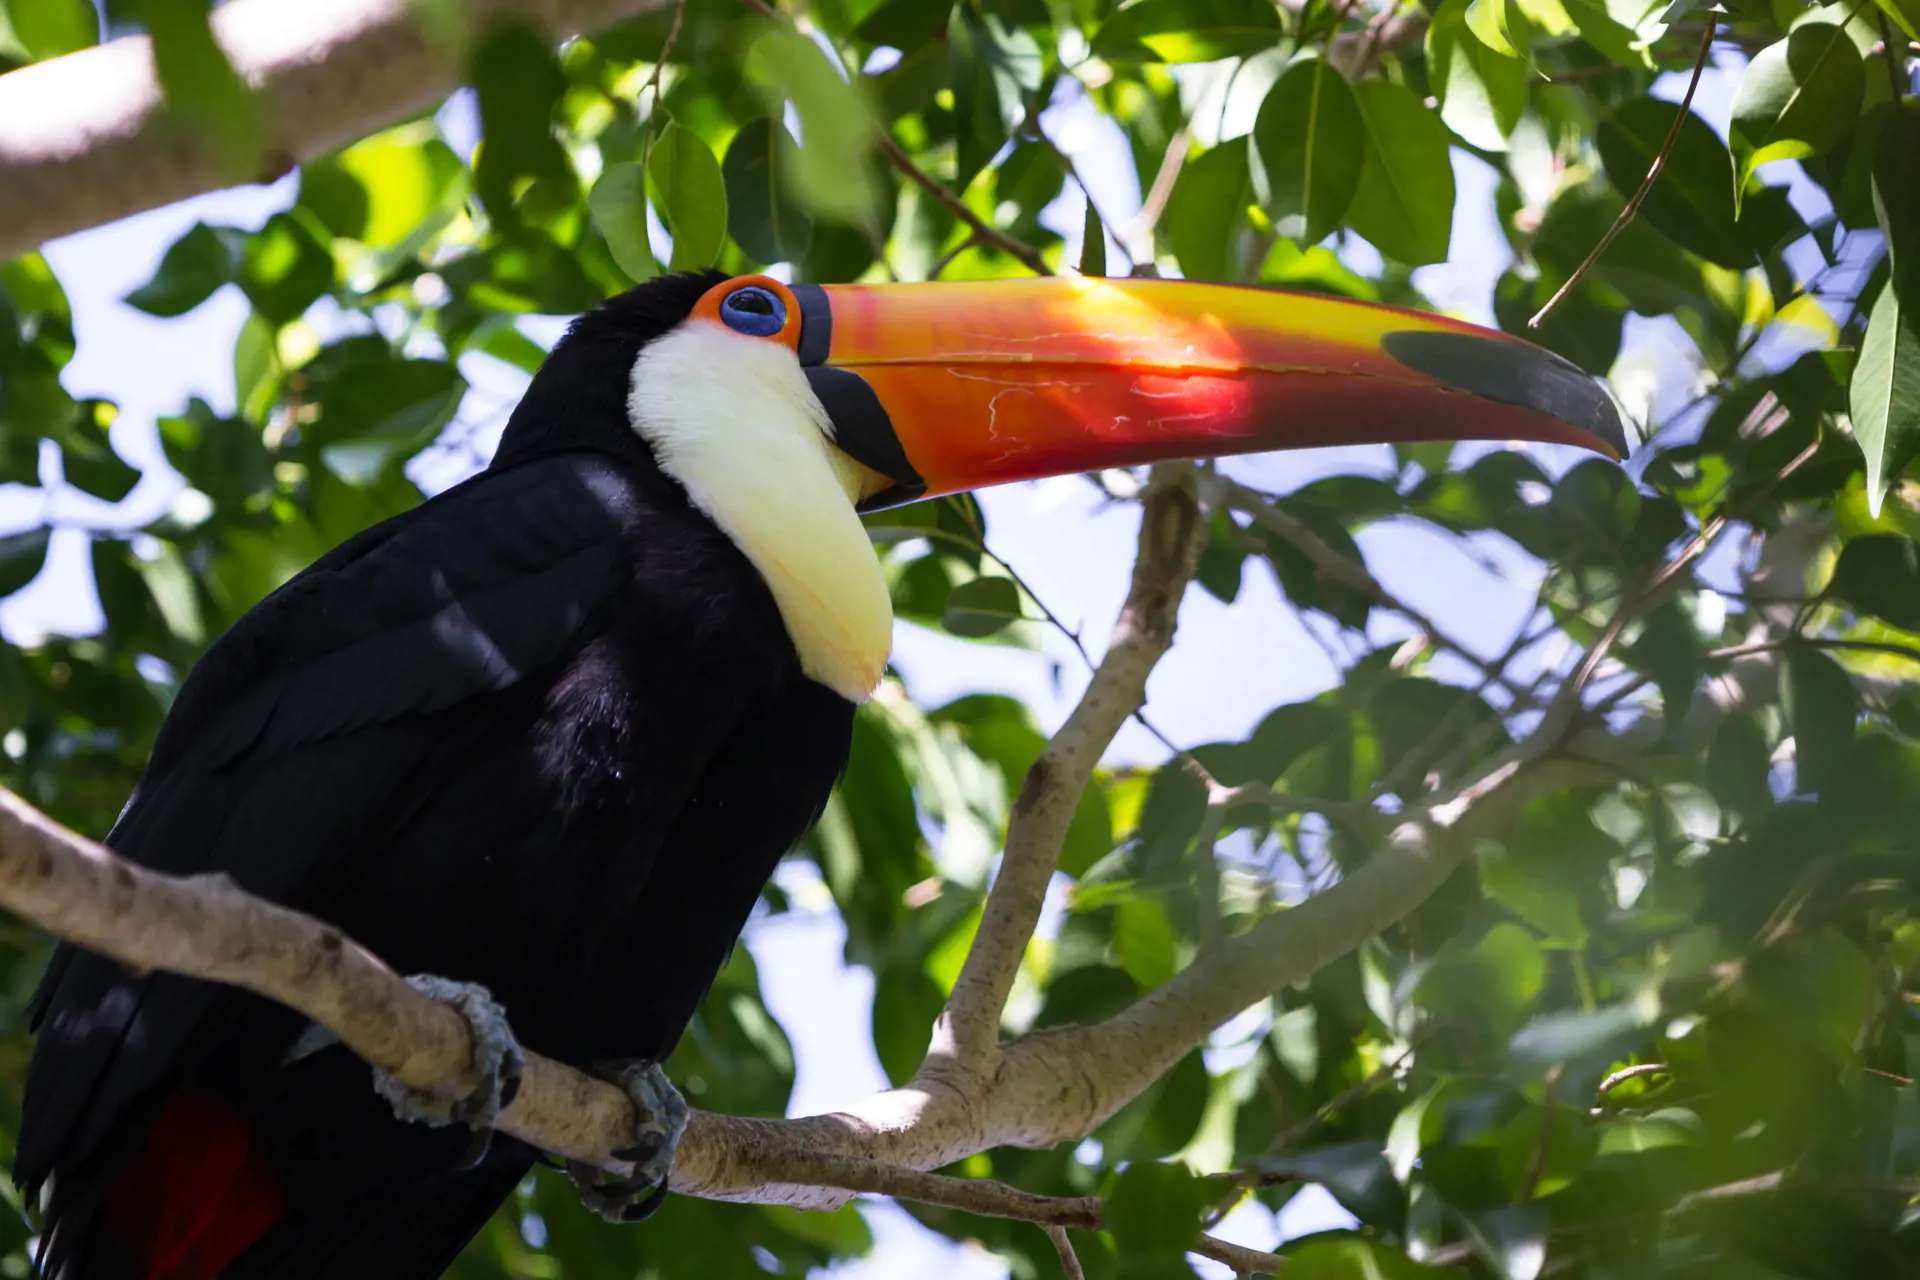 DYRELIV - Den gamle kongeby Palenque ligger omgivet af jungle. Aber og fugle huserer i trækronerne. Her er det en tukan.